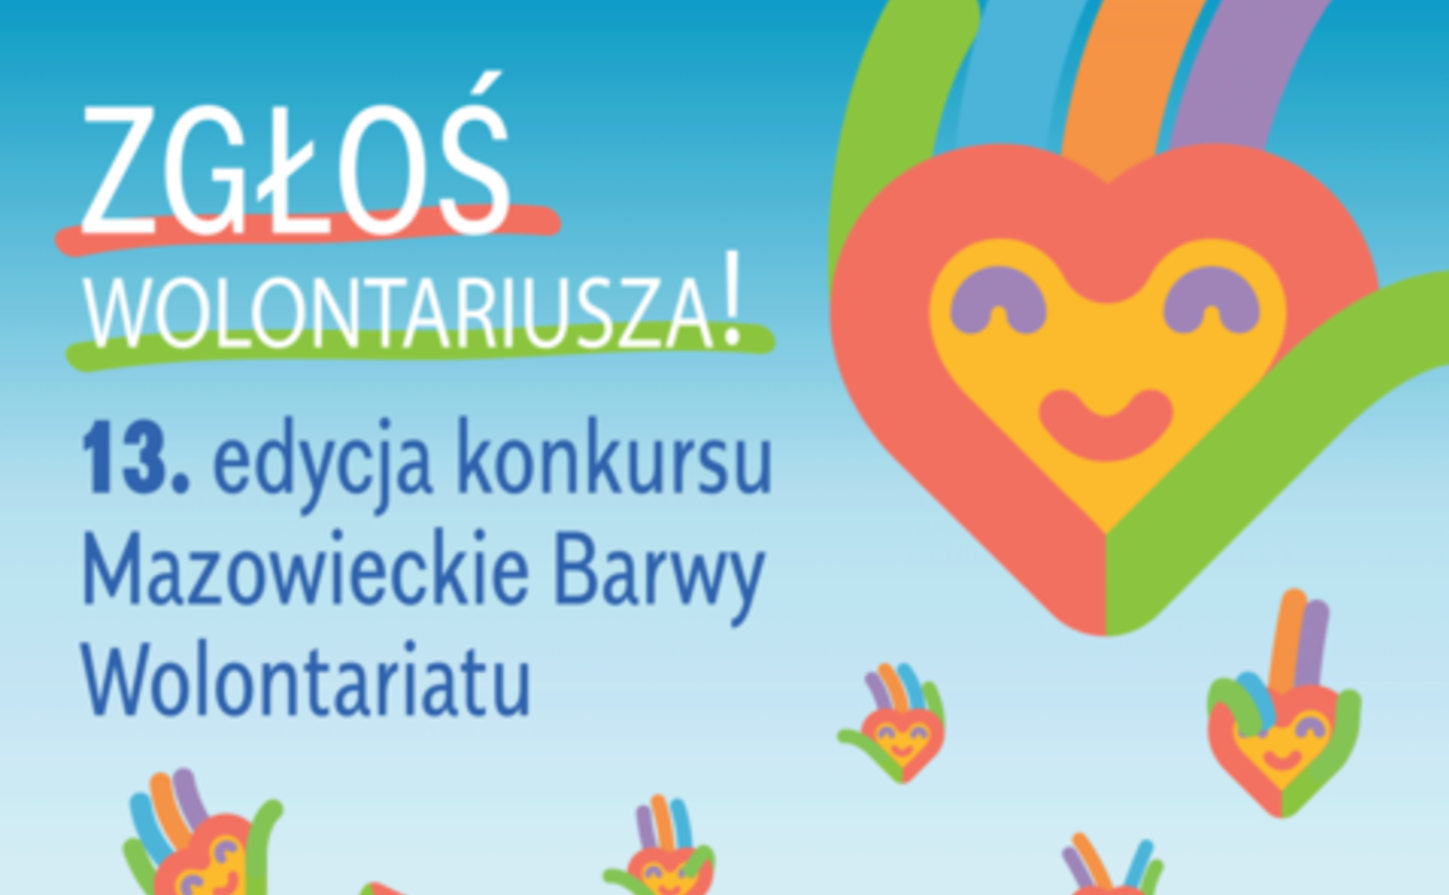 Grafika z hasłem zgłoś wolontariusza, 13. edycja konkursu Mazowieckie Barwy Wolontariatu